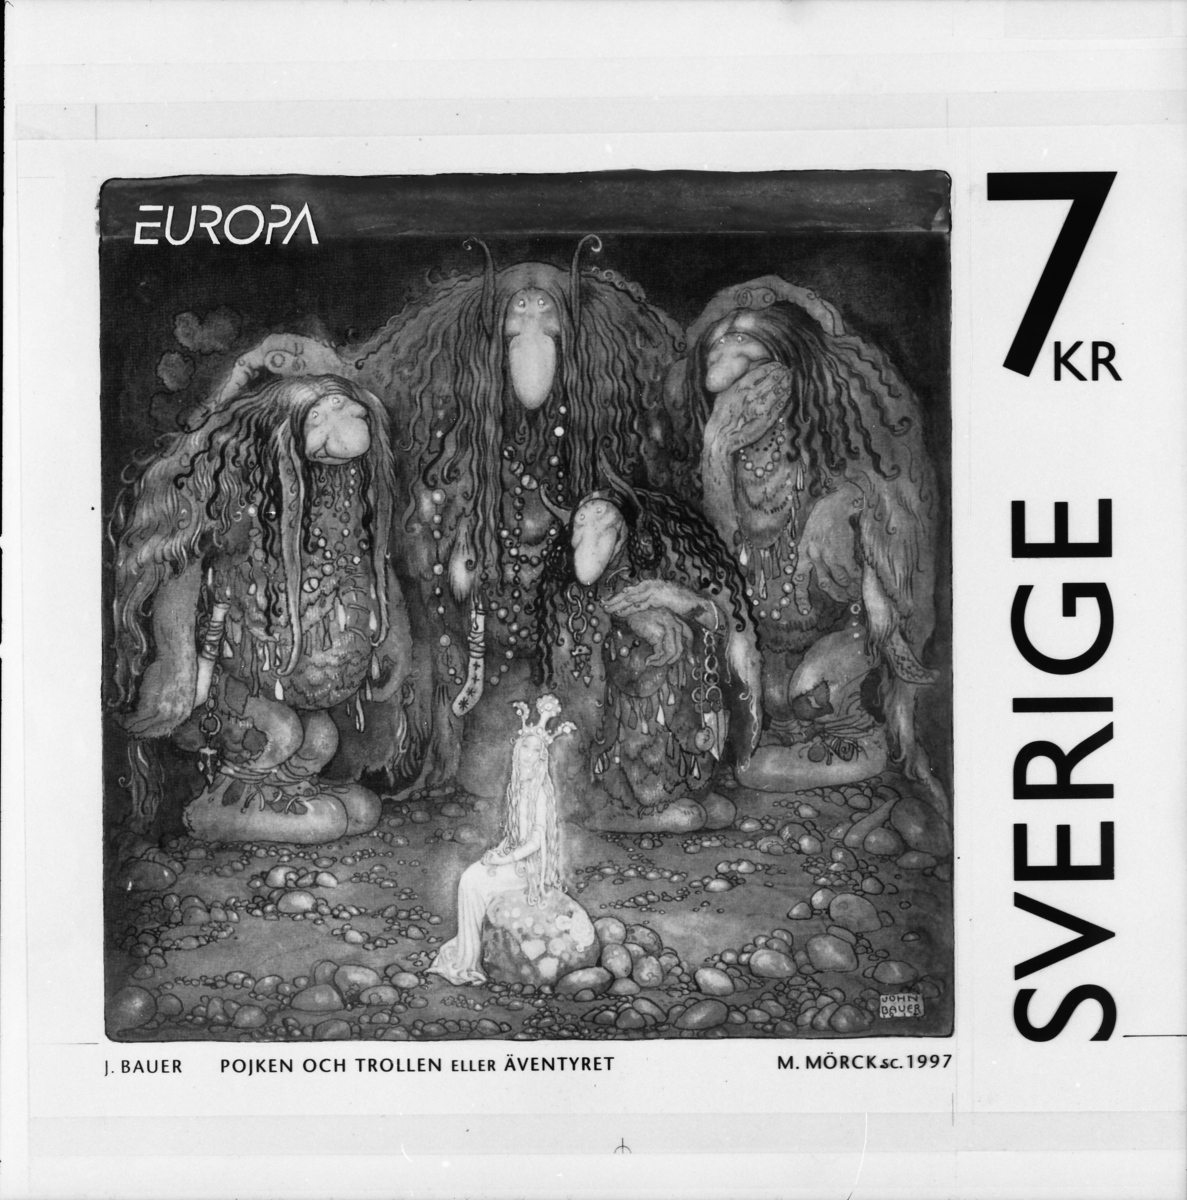 Original till frimärket "Pojken och trollen eller Äventyret" för frimärksutgåvan Europa XXVI. Sagor och legender: John Bauer, 
1997.